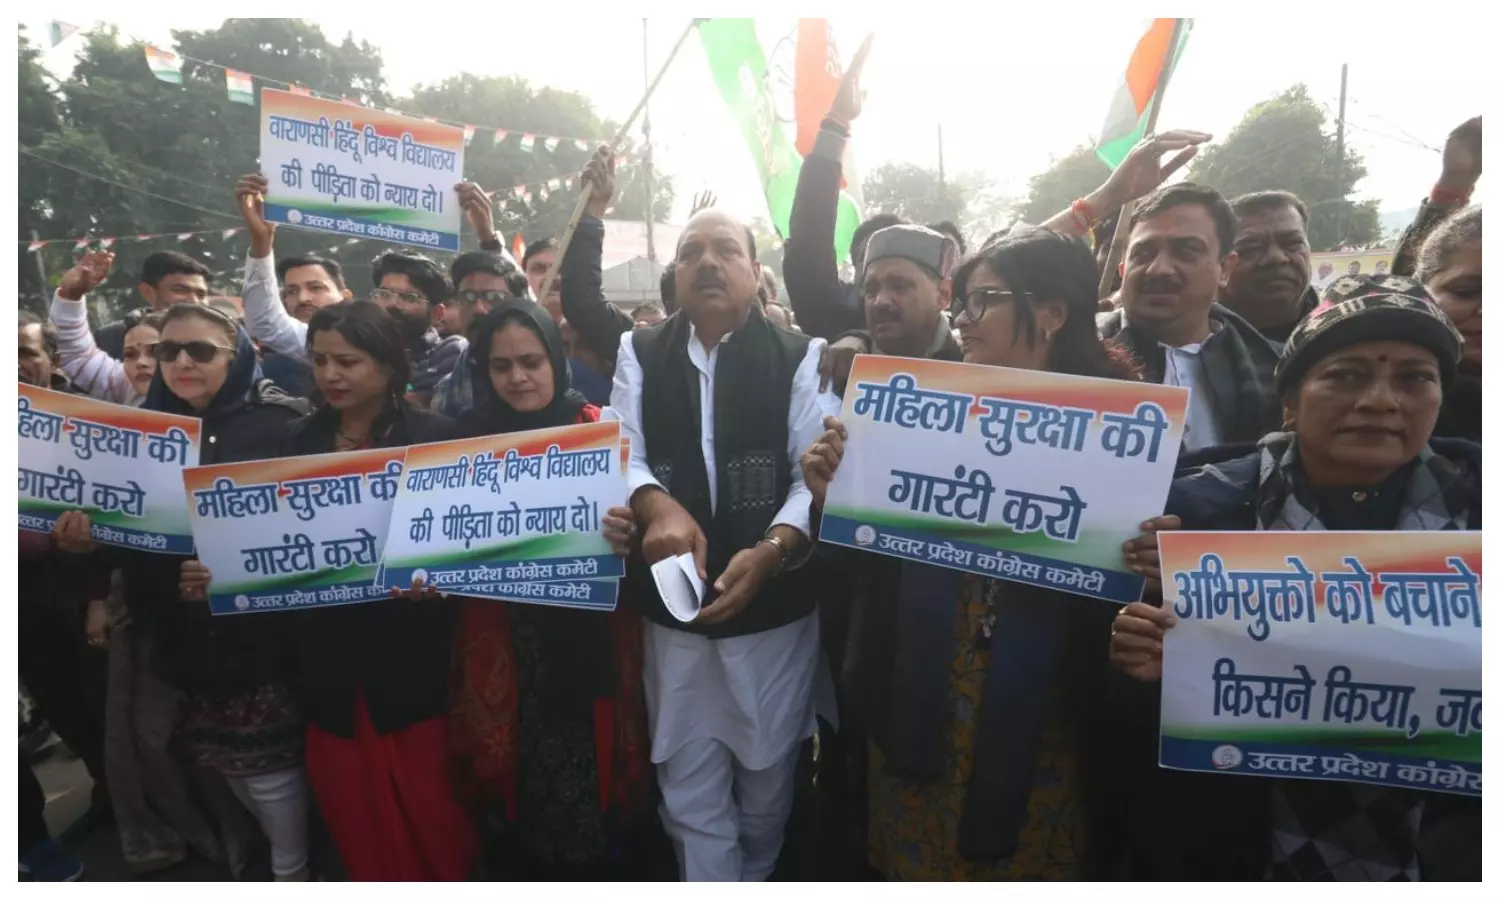 IIT BHU Case: सरकार के खिलाफ कांग्रेस का प्रदेशव्यापी प्रदर्शन, लखनऊ भी में विरोध, राज्यपाल को सौंपा ज्ञापन